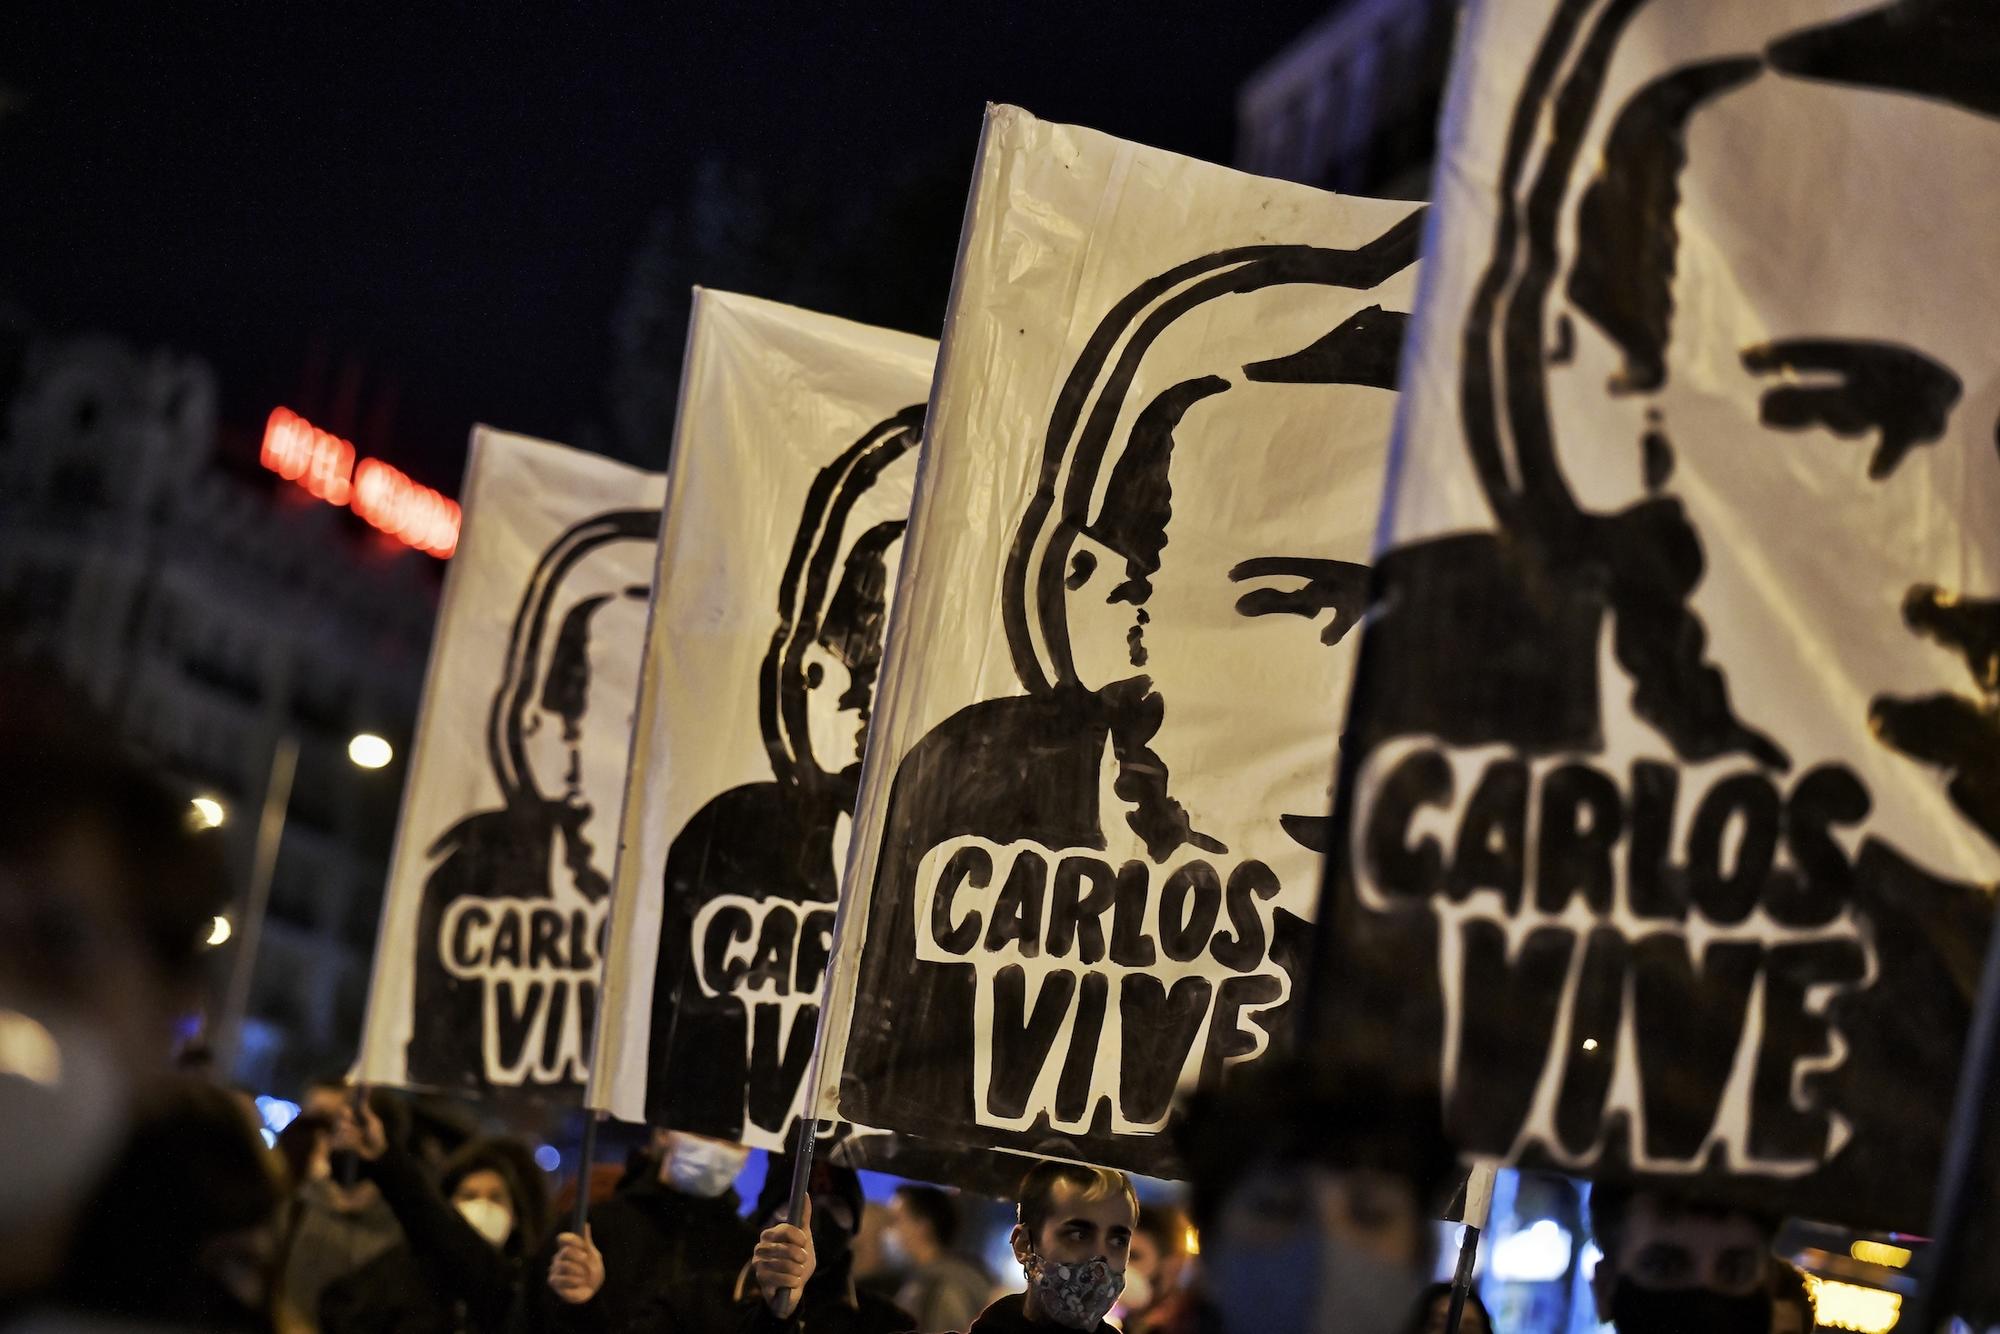 Manifestación antifascista Carlos Palomino 2020 - 1